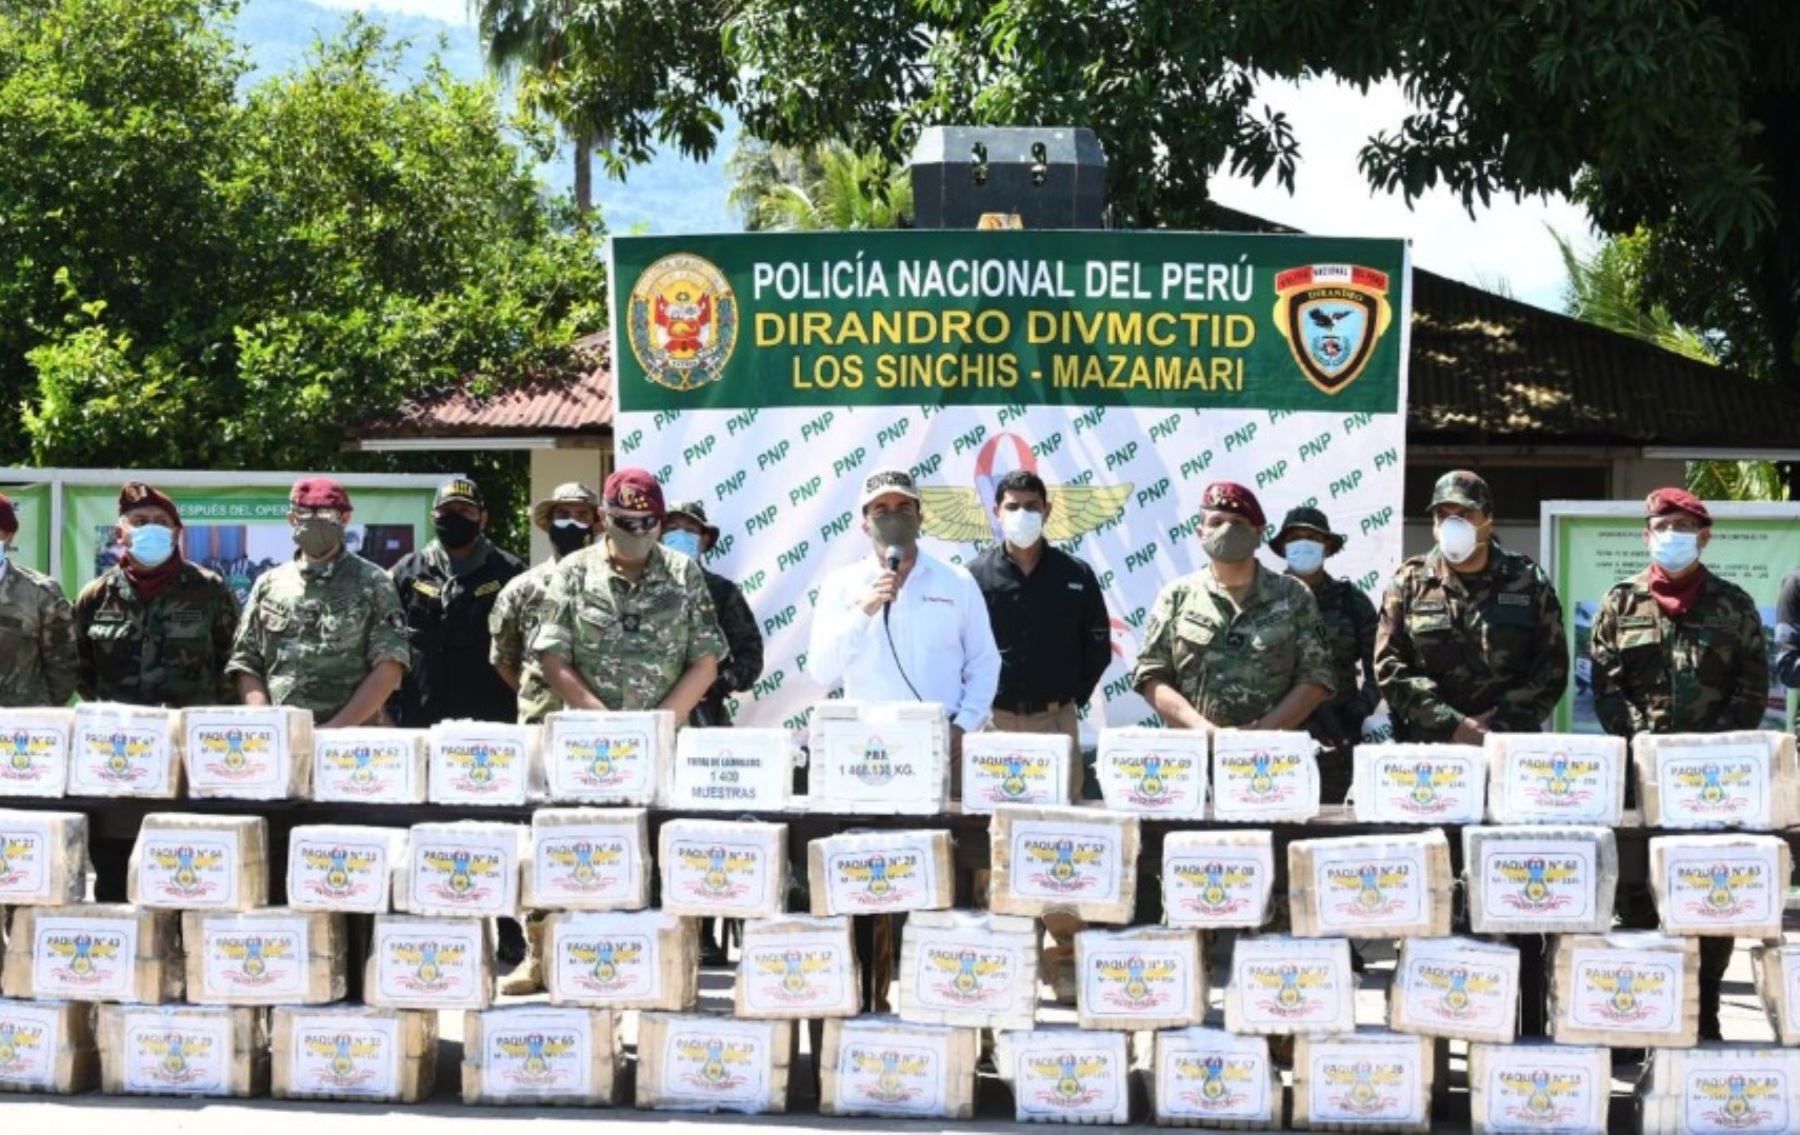 La Policía Nacional del Perú dio un nuevo gran golpe al narcotráfico al decomisar una tonelada y media de droga, valorizada en alrededor de 102 millones de dólares en los mercados de Europa, informó hoy el ministro del Interior, Gastón Rodríguez.